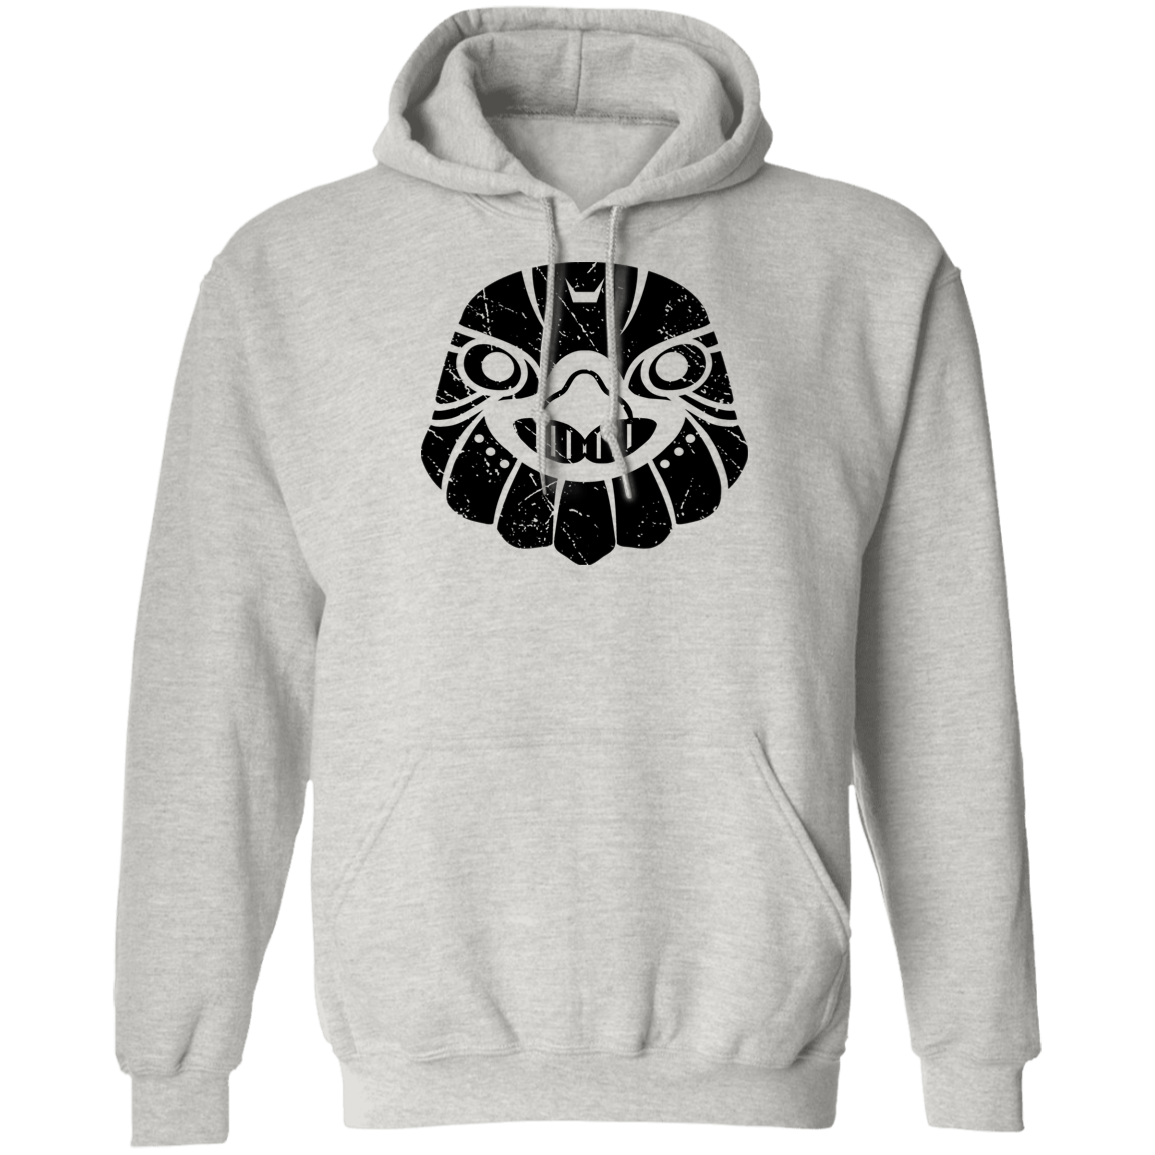 Black Distressed Emblem Hoodies for Adults (Hawk/Talon)